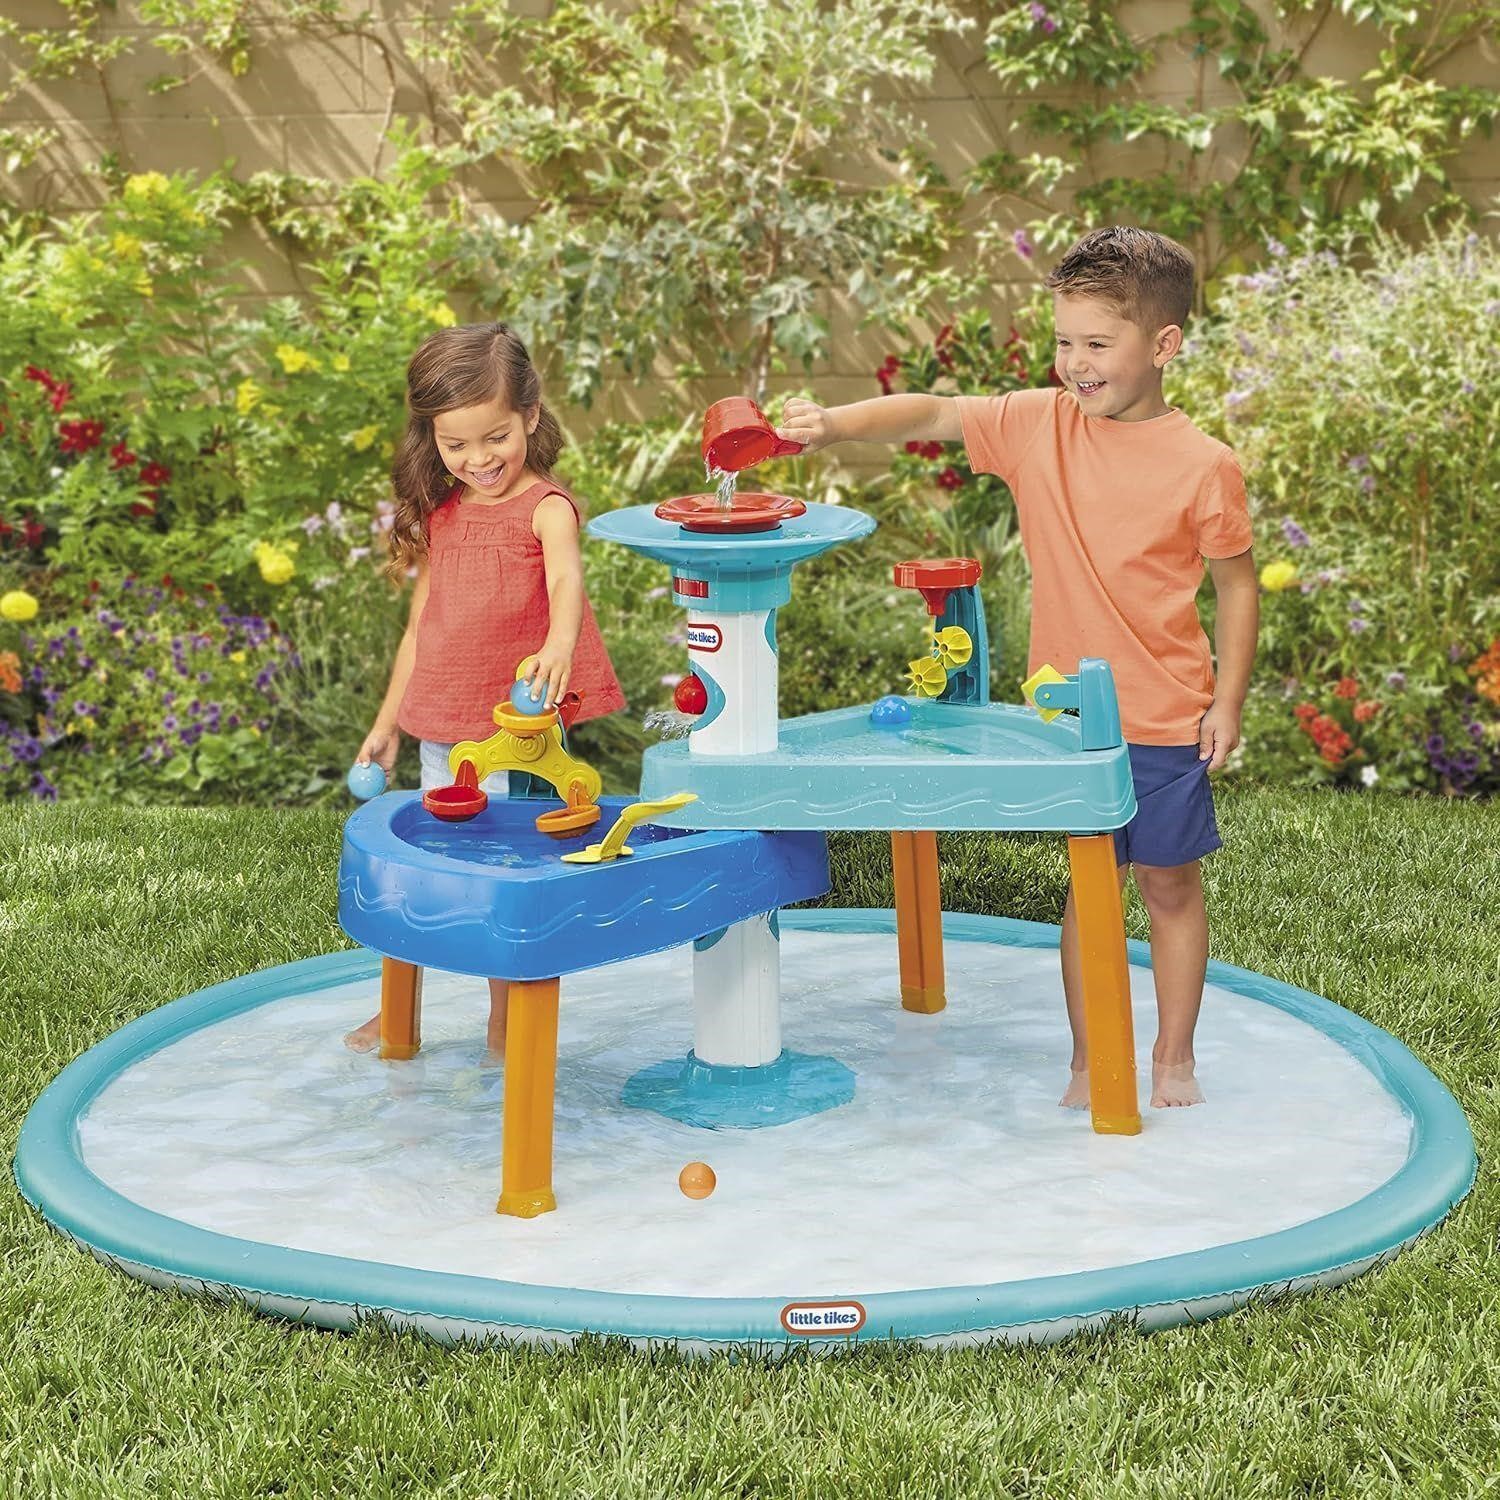 Little Tikes 3-in-1 Splash n Grow Water Play Table